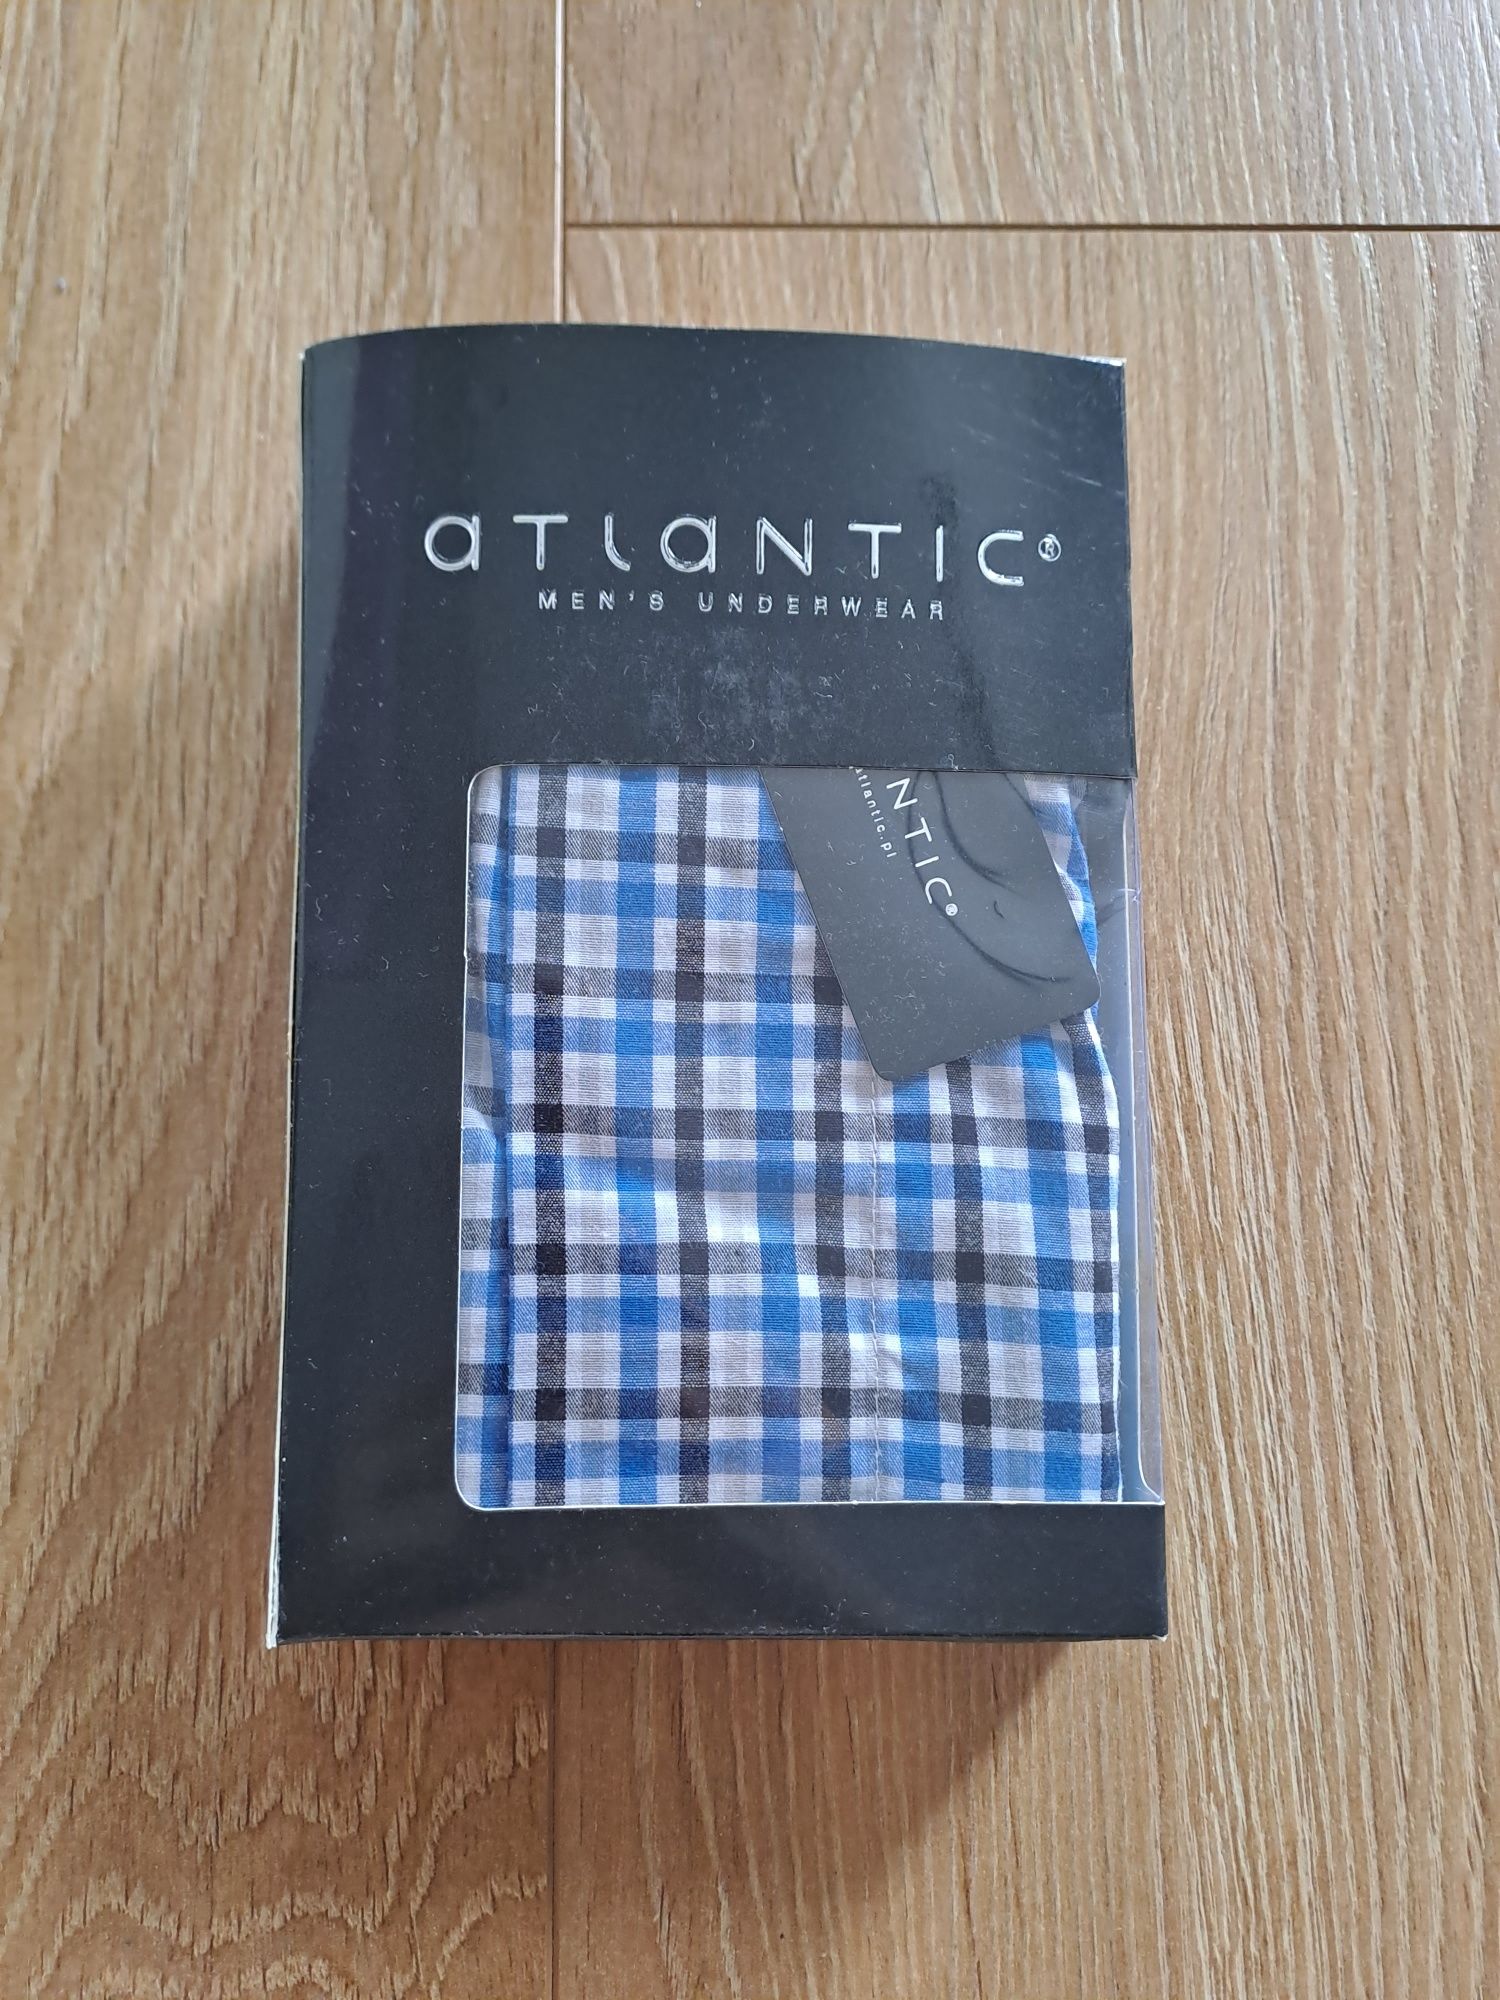 Bokserki męskie Atlantic, rozmiar XXL, tkanina koszulowa, bawełna